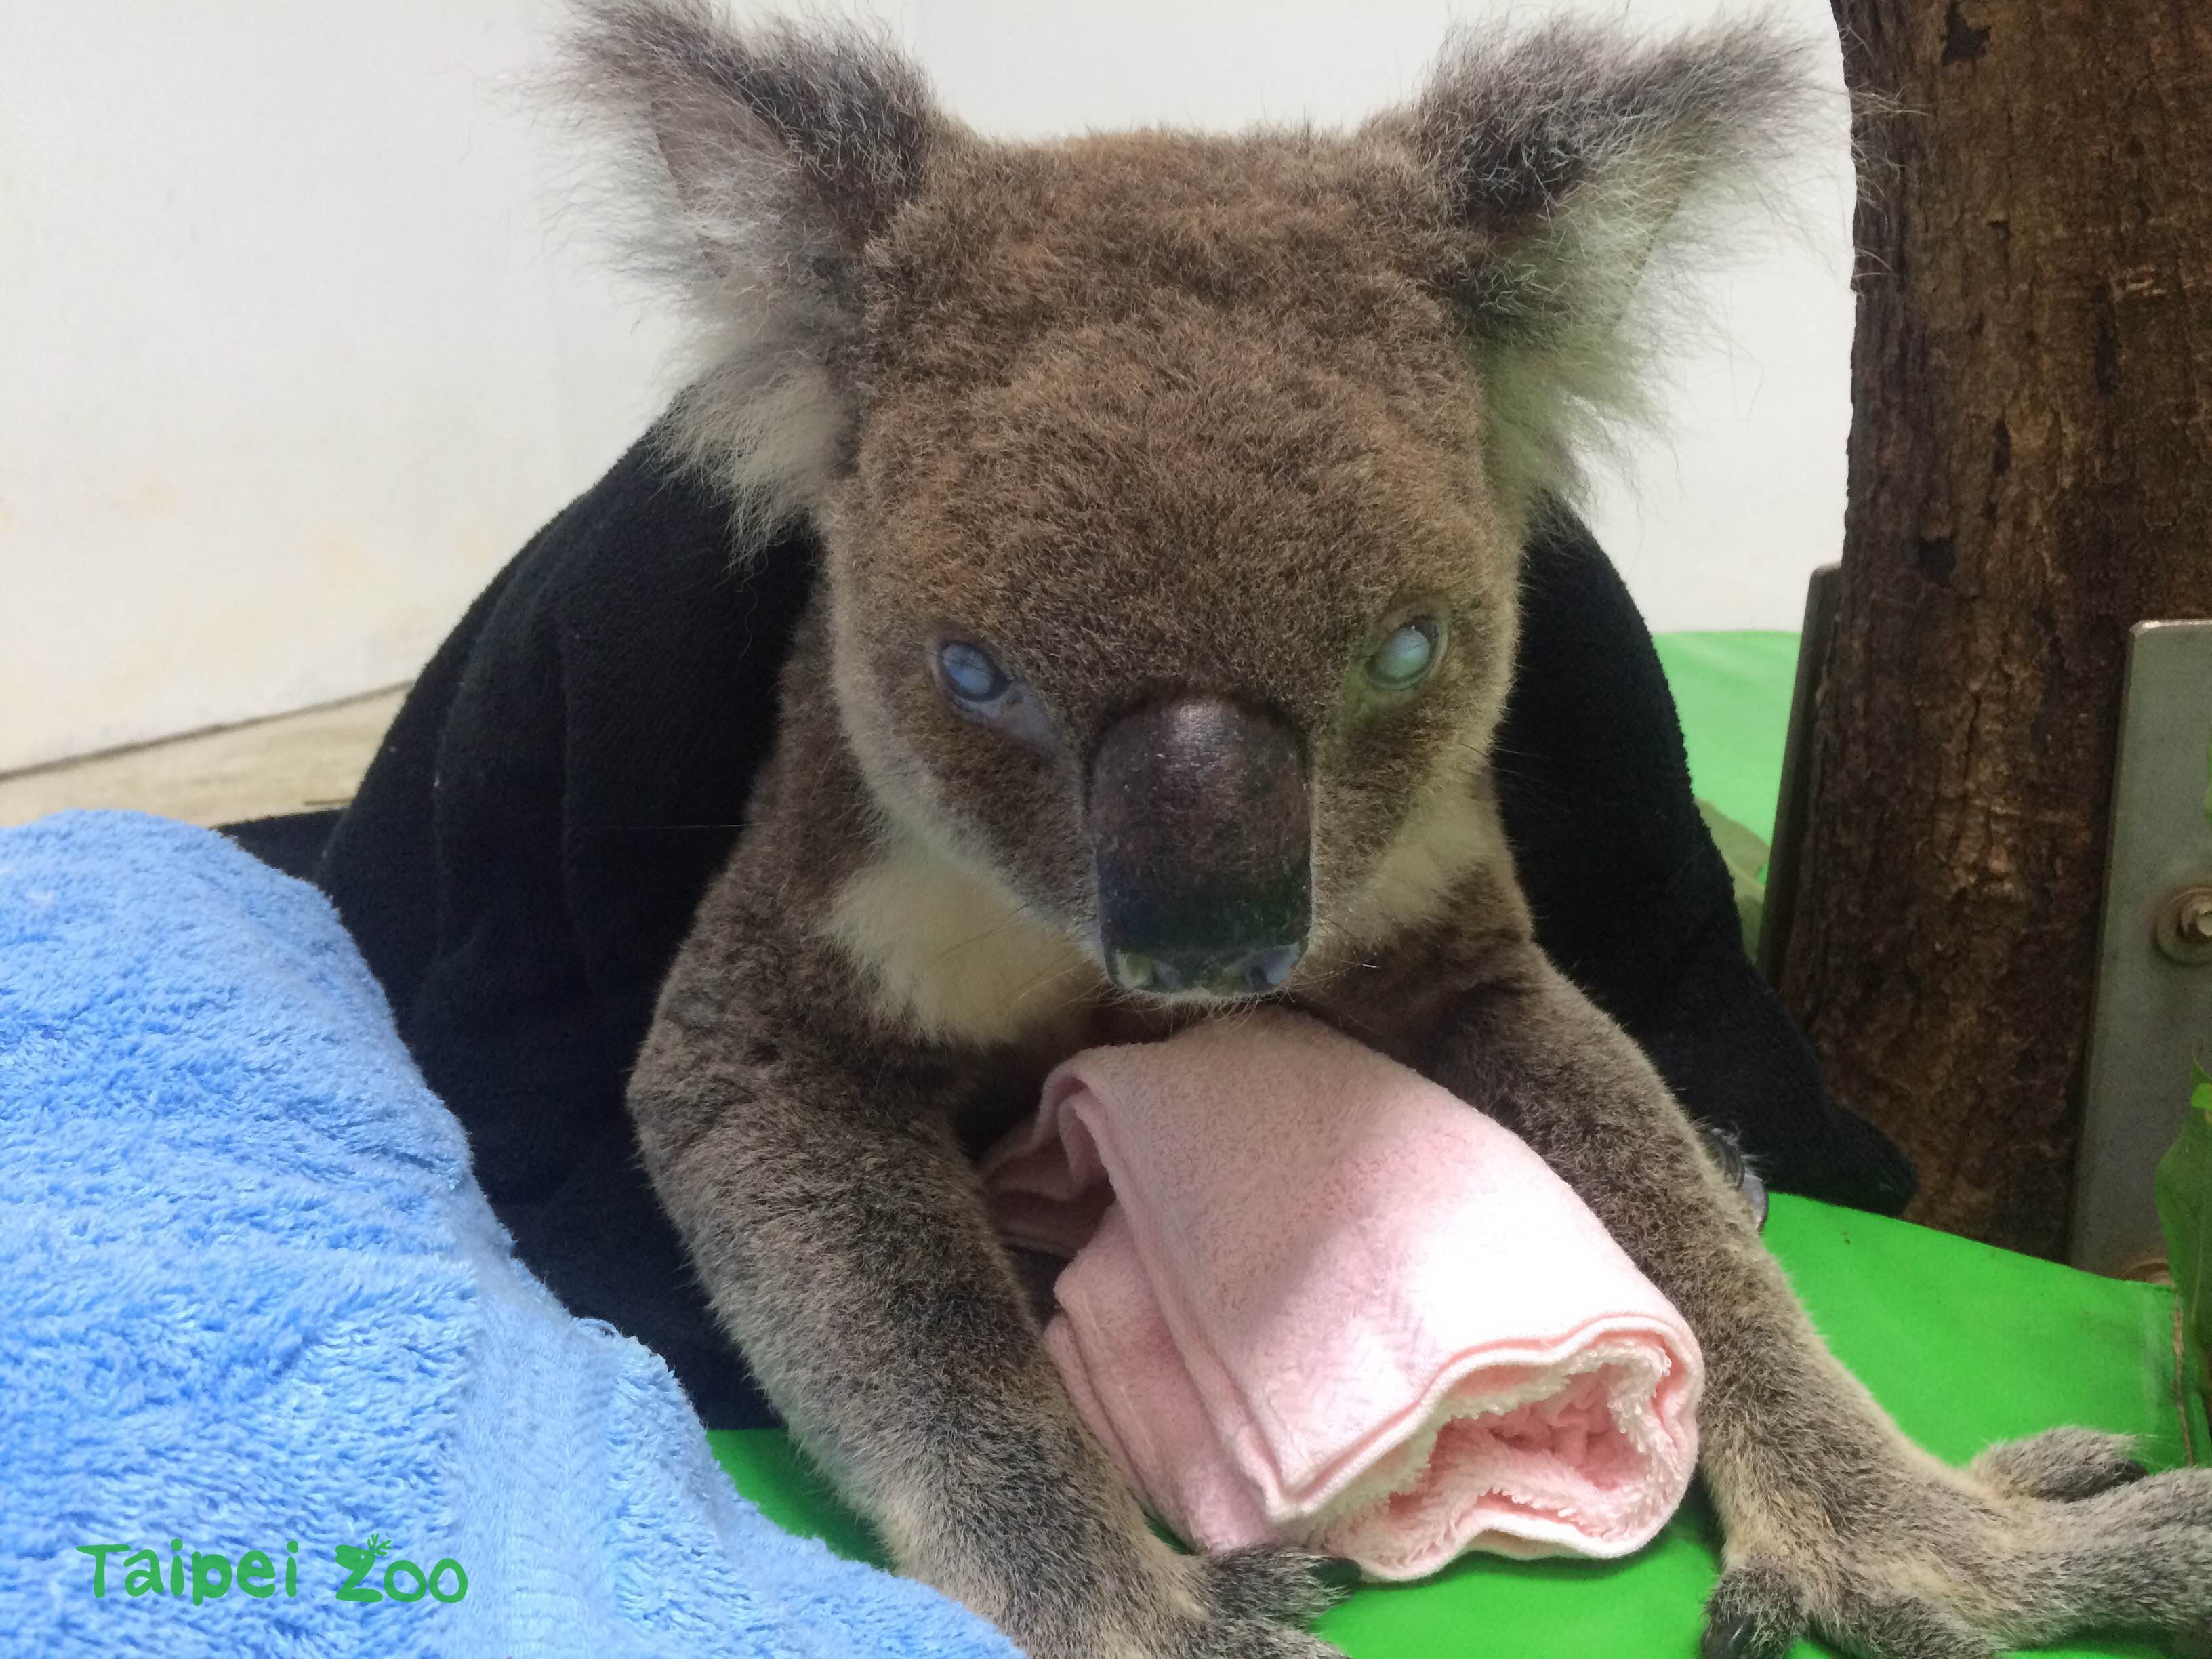 動物園保育員提供毛巾給派翠克保暖。圖片由台北市立動物園提供